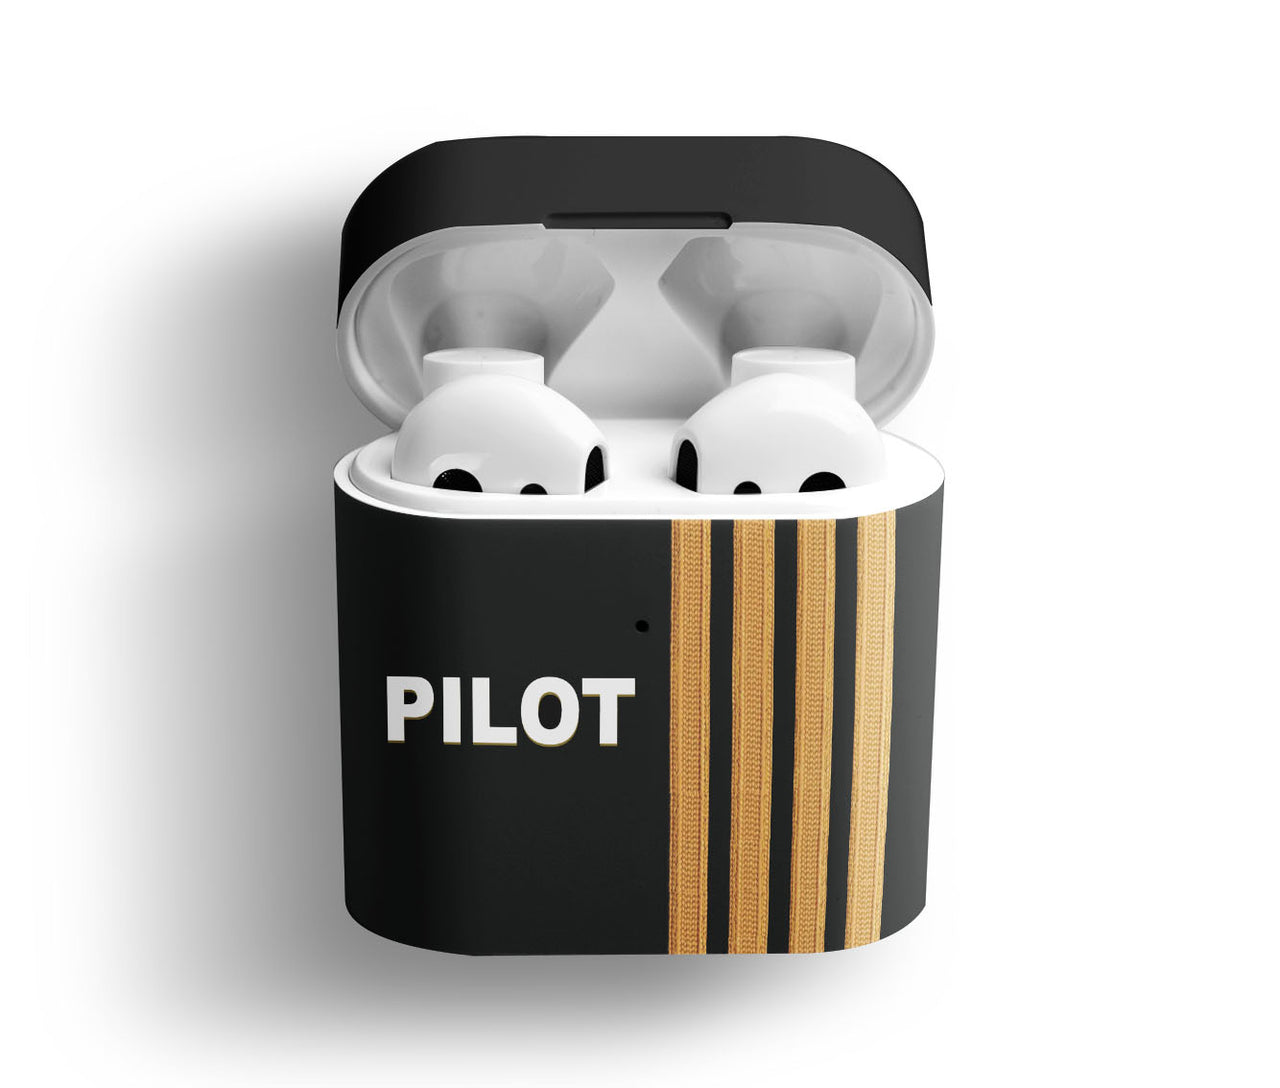 Pilot & Epaulettes (4,3,2 Lines) Designed AirPods  Cases